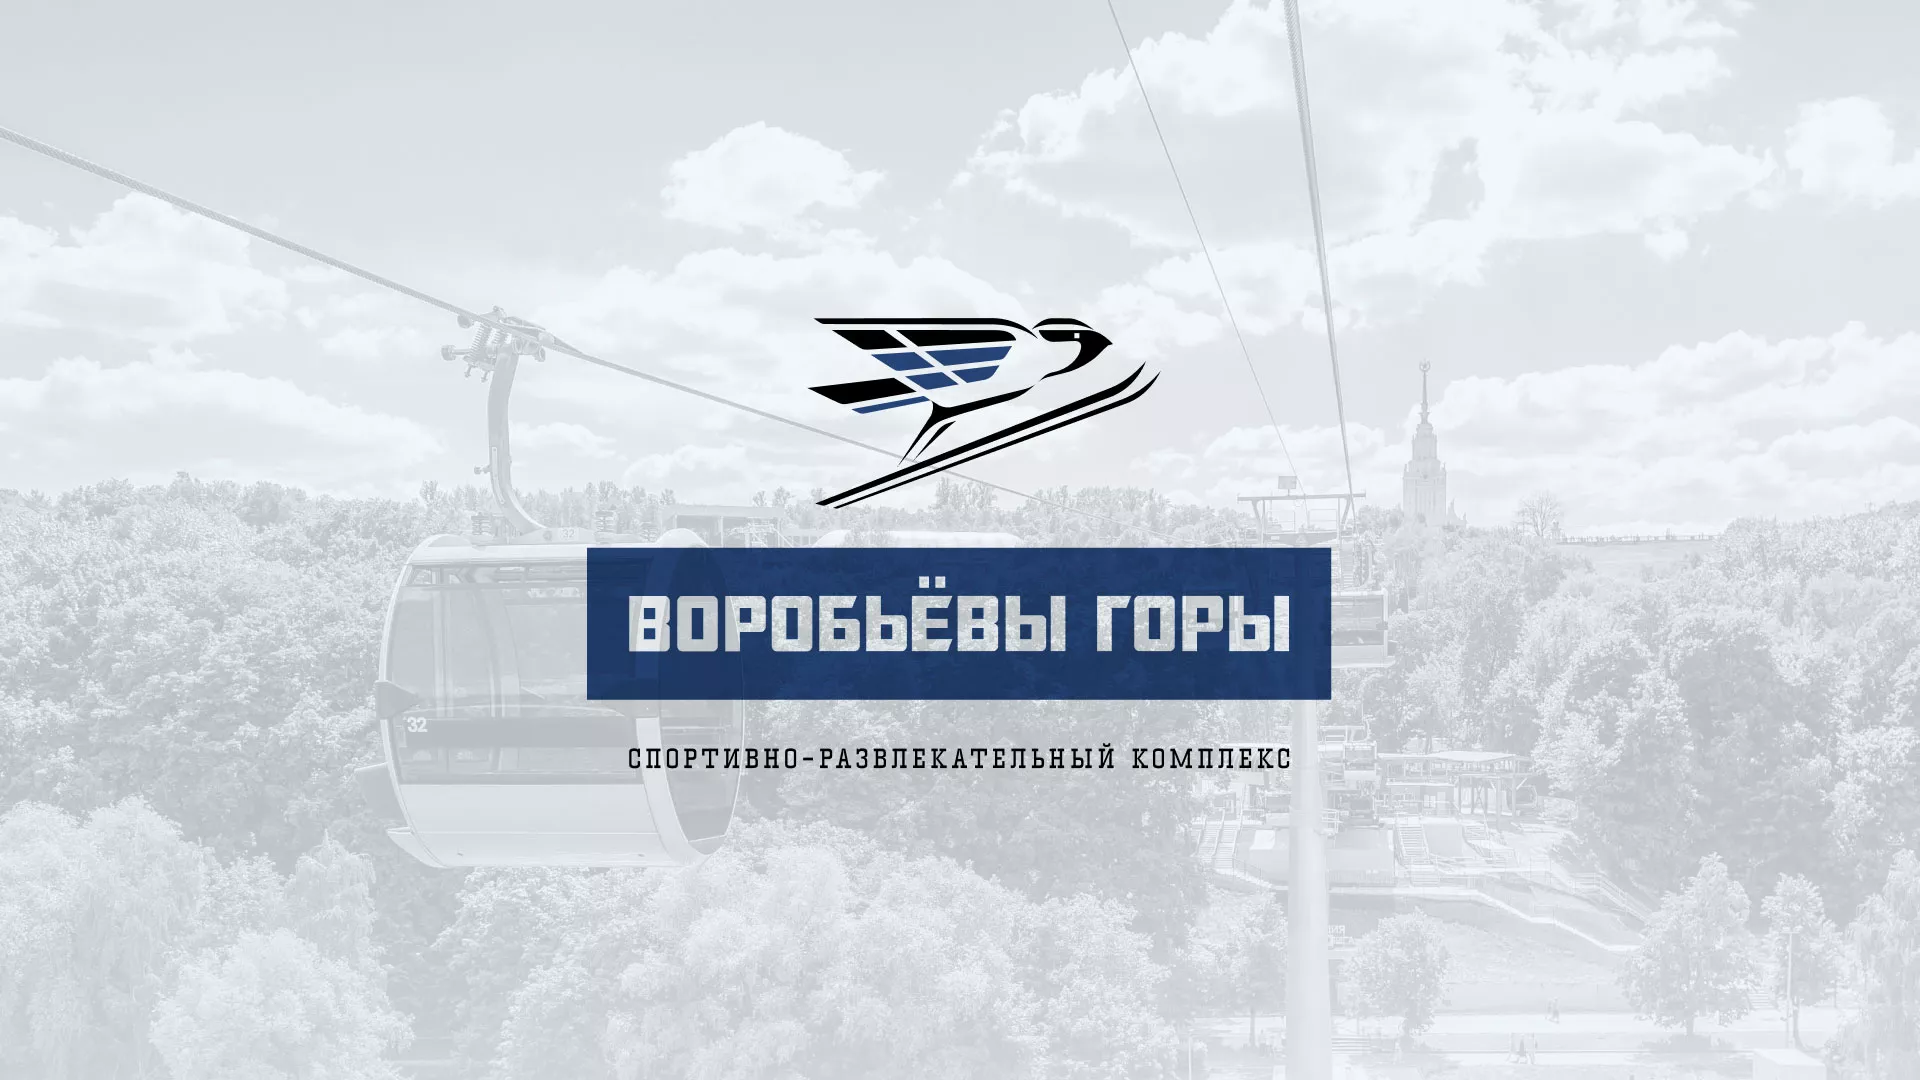 Разработка сайта в Волчанске для спортивно-развлекательного комплекса «Воробьёвы горы»